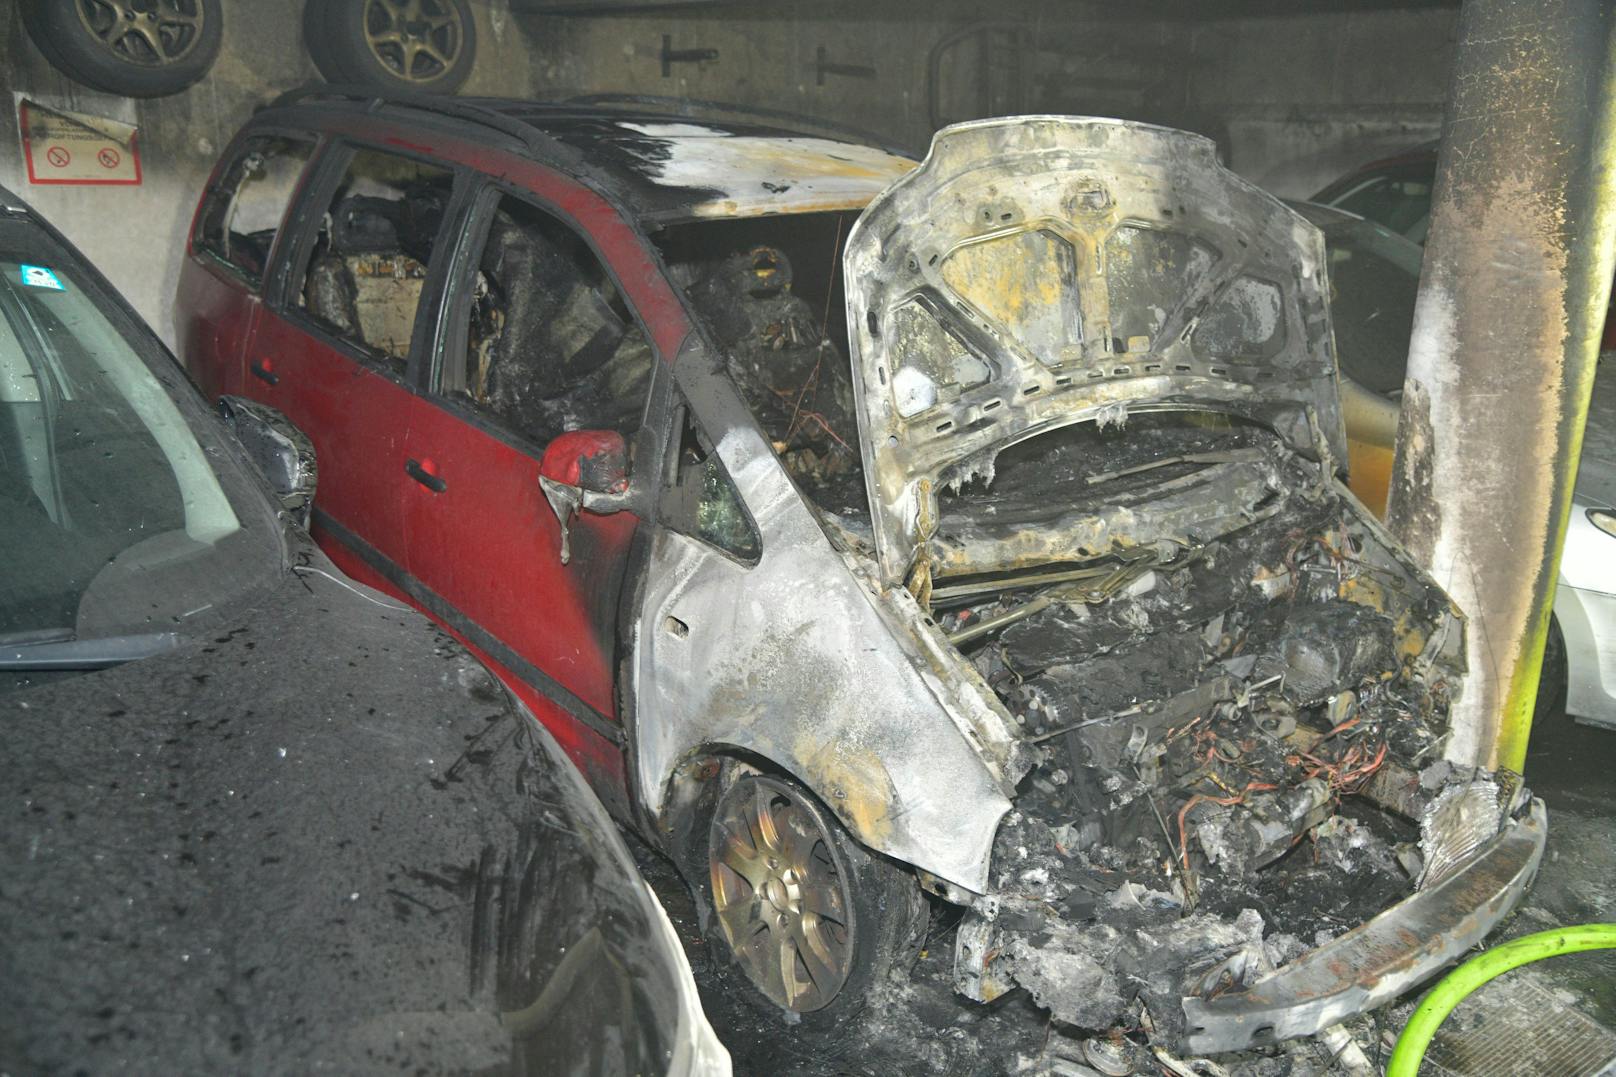 Aus bisher ungeklärter Ursache kam es gegen 21.50 Uhr in einer Tiefgarage in Absam zu einem Brand an einem abgestellten Fahrzeug, wobei dieses vollkommen abbrannte und die beidseitig abgestellten Autos ebenfalls beschädigt wurden. 